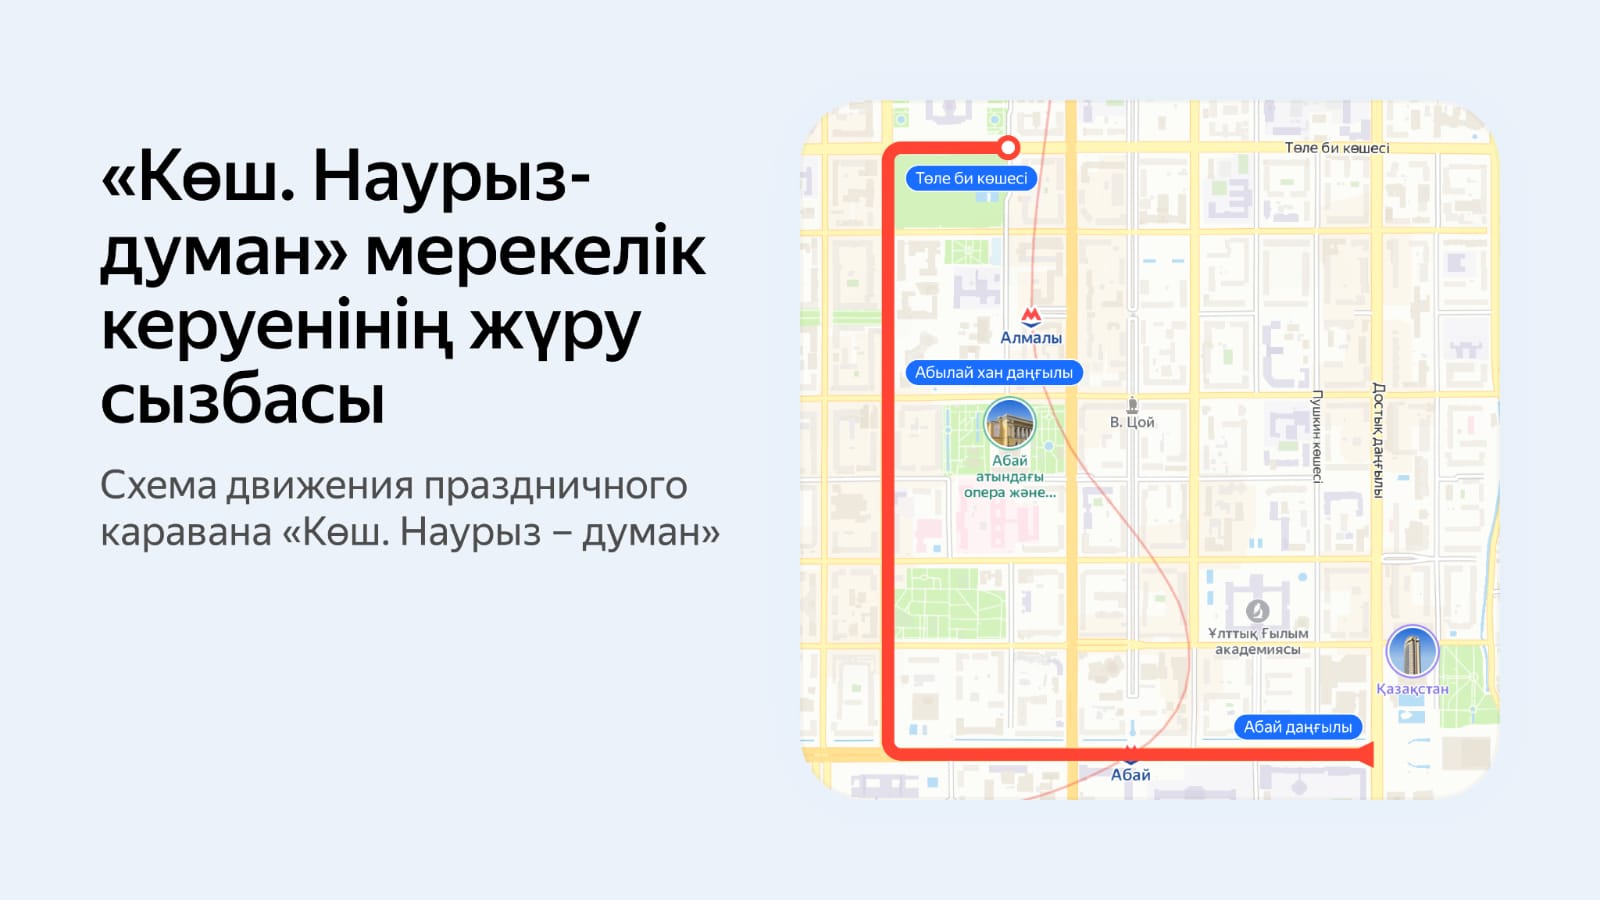 План мероприятий к Наурызу можно посмотреть в сервисах Яндекс Казахстана